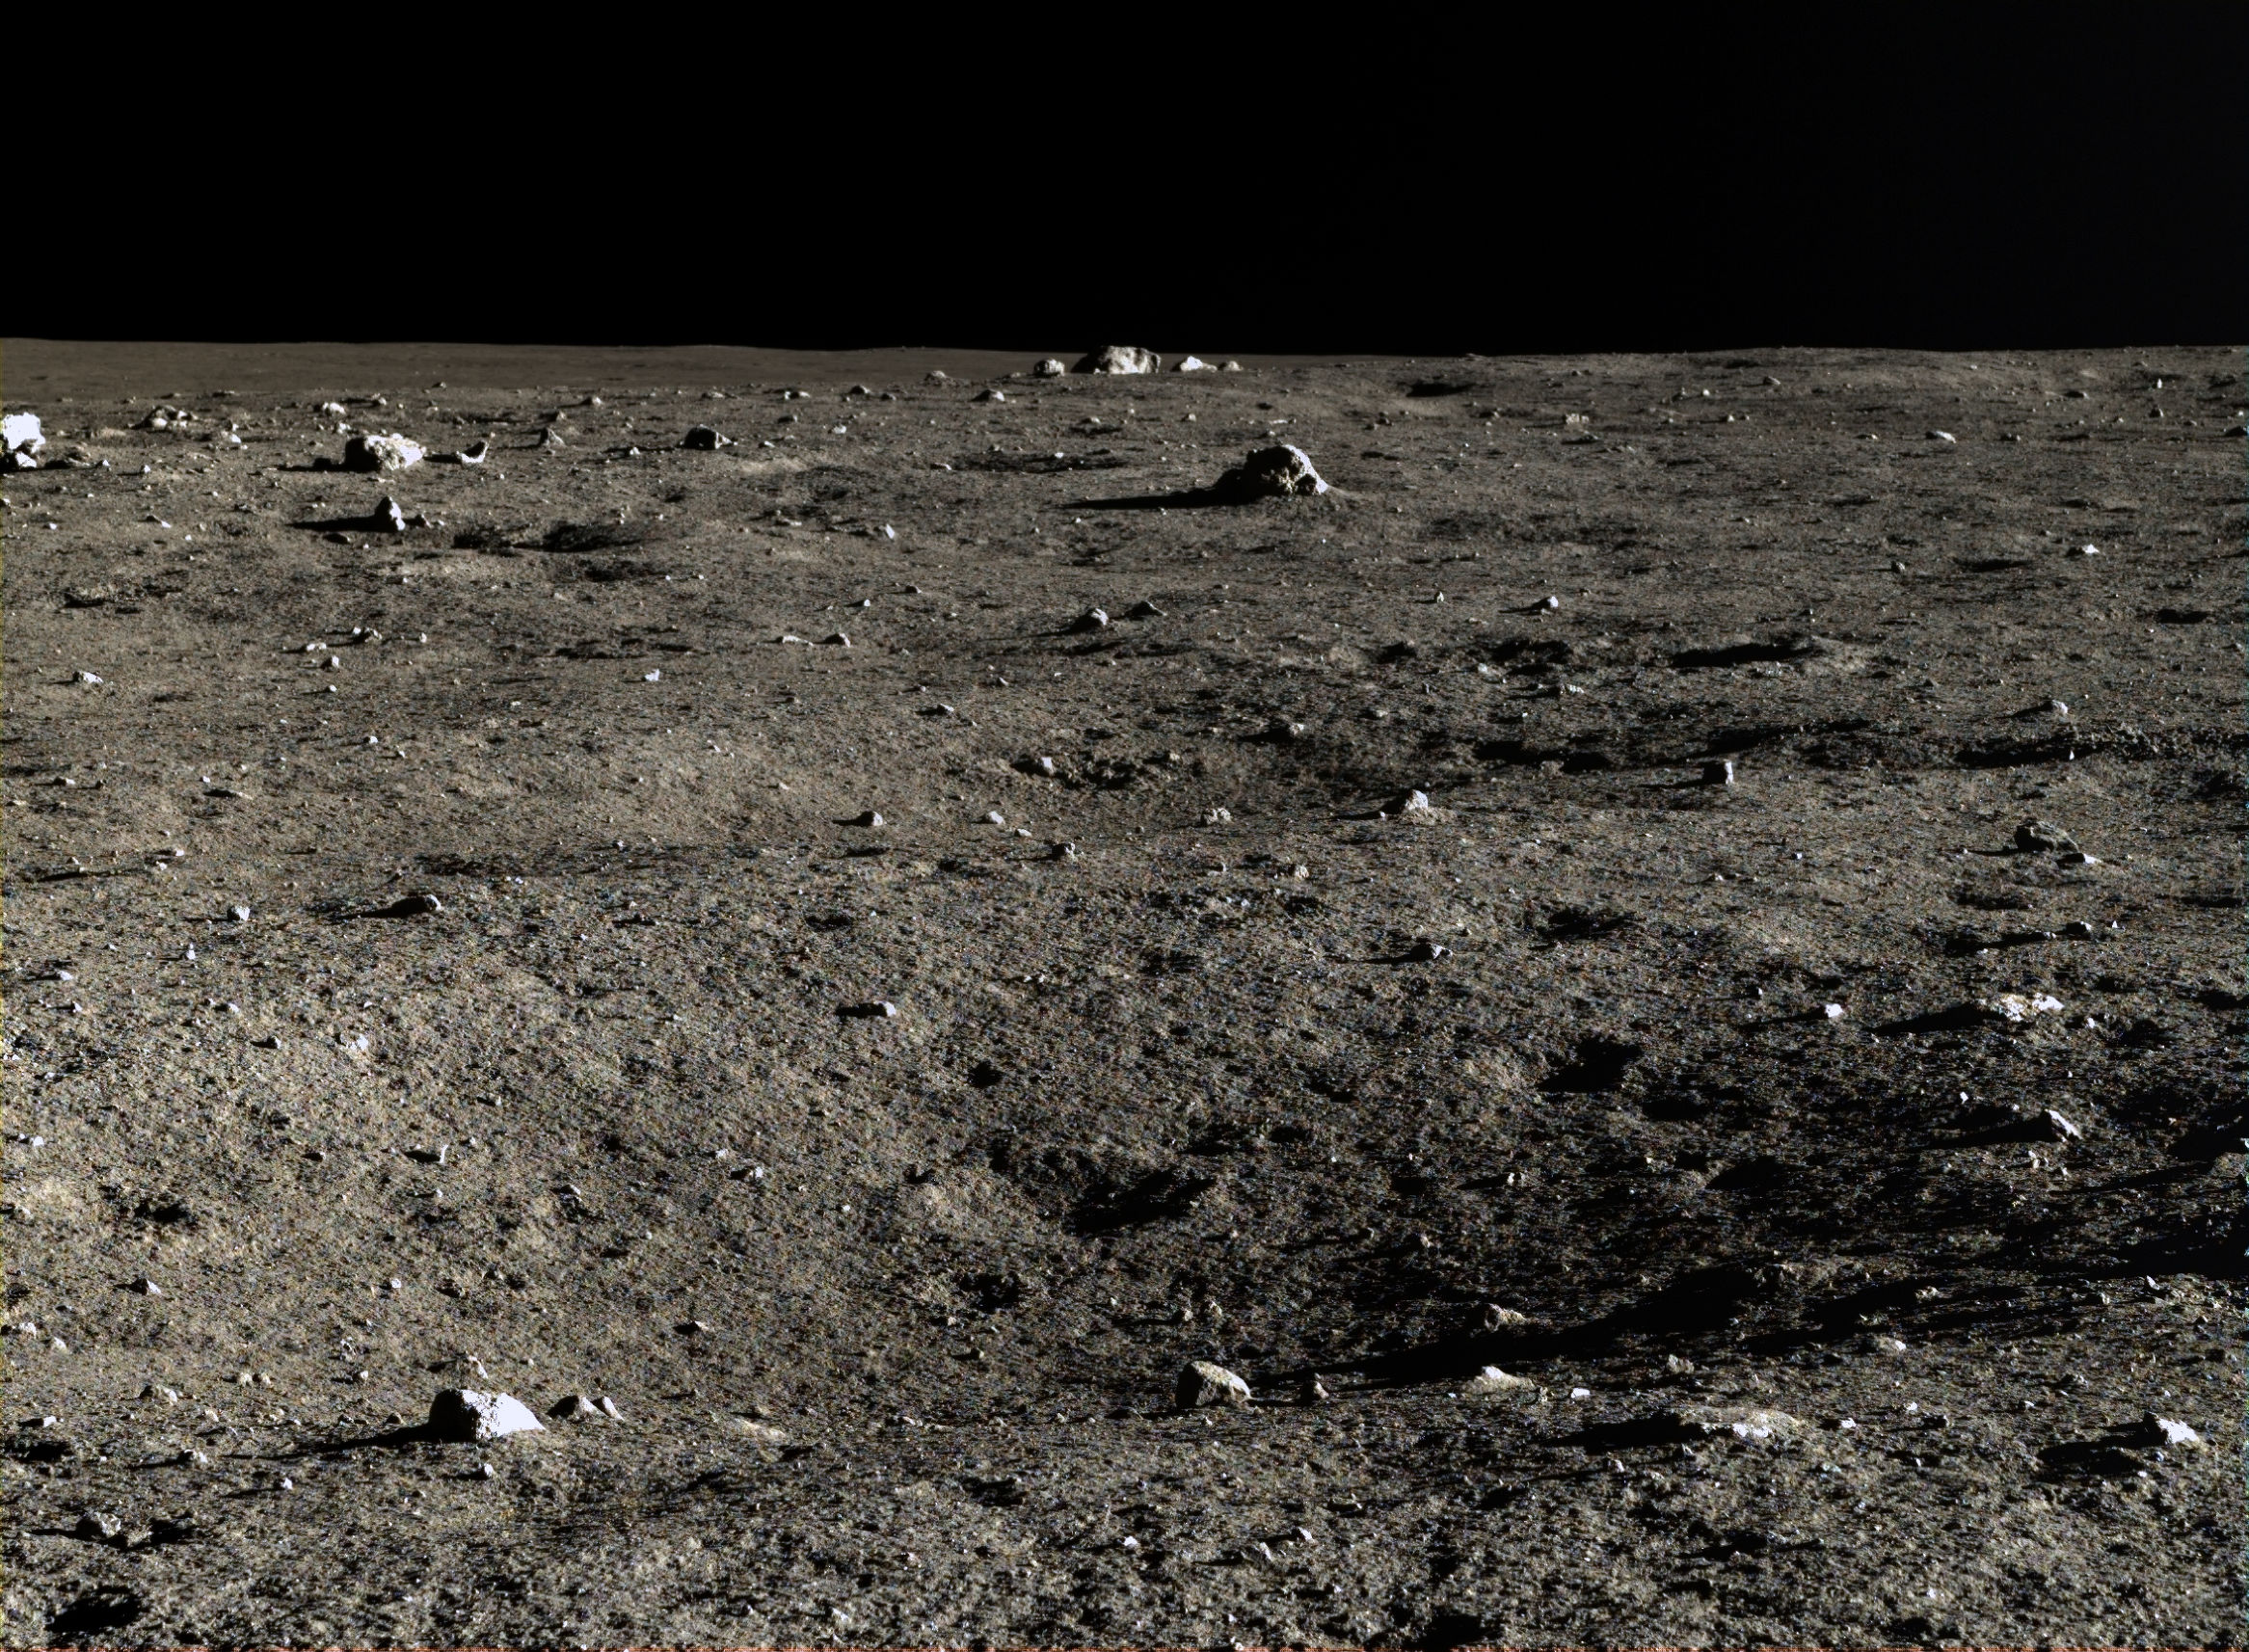 中国月球车传回高清图片:清晰度令人震撼